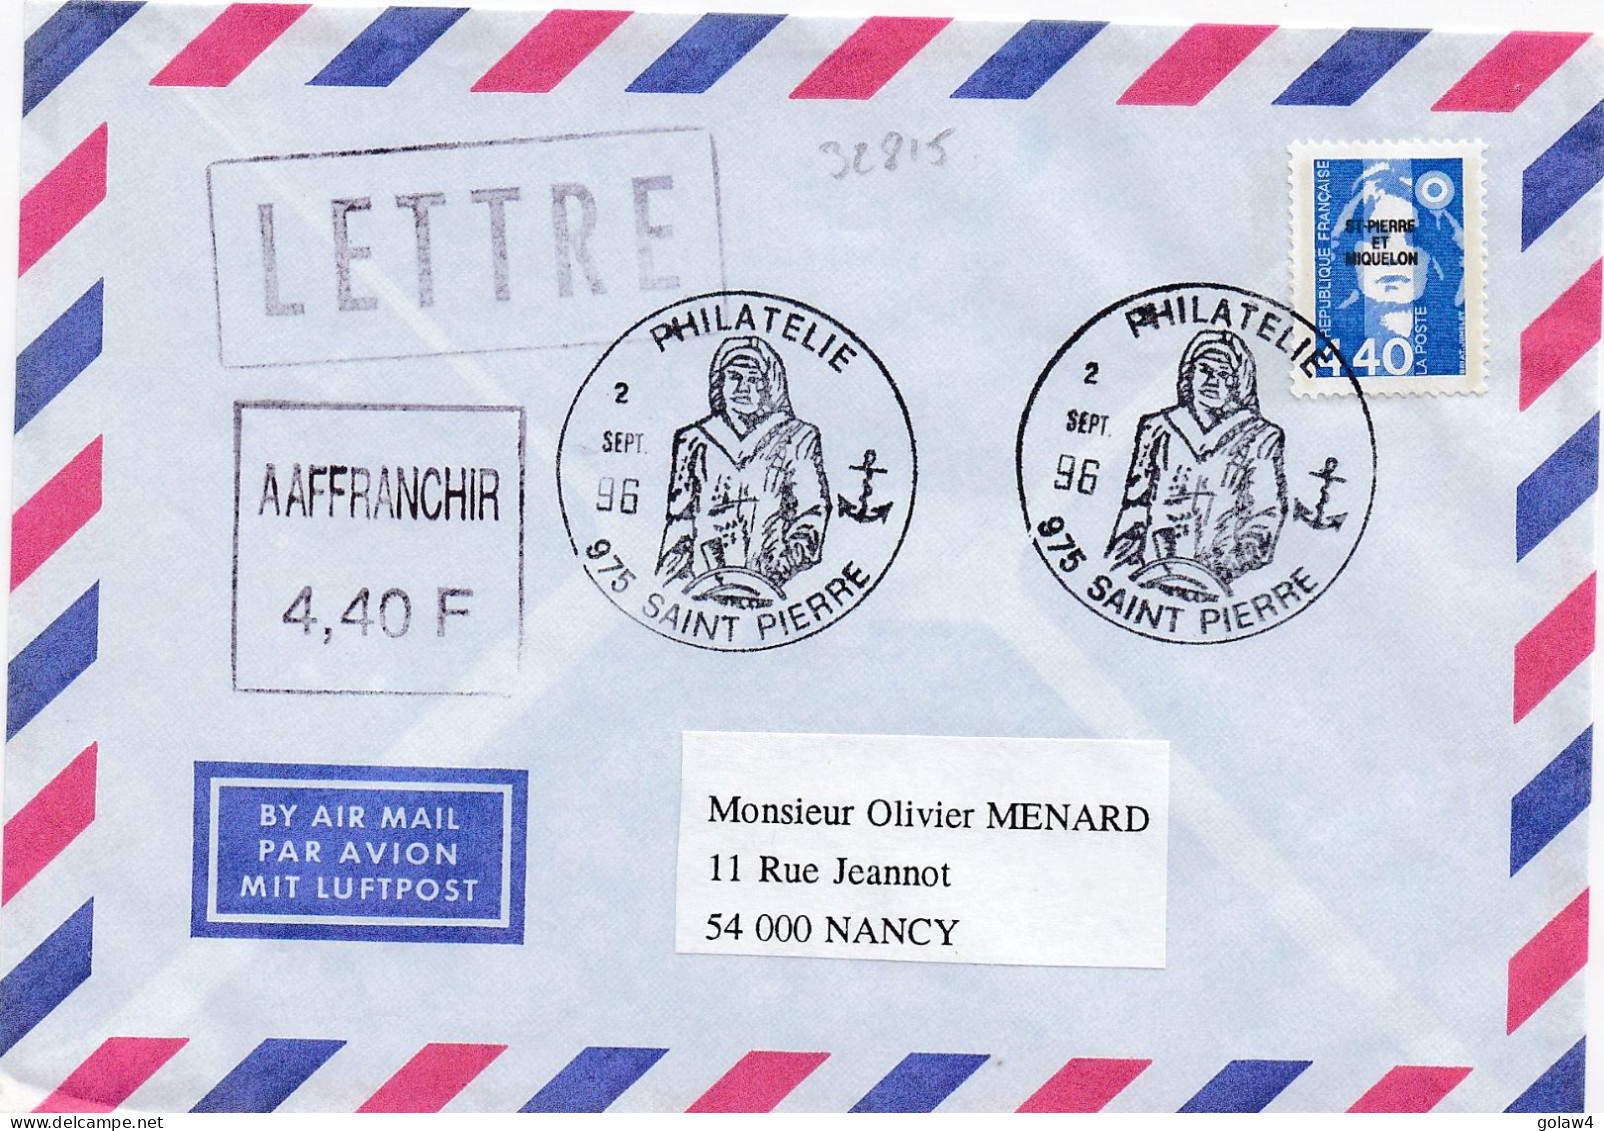 32815# MARIANNE BRIAT 4,40 Francs LETTRE Obl 975 ST PIERRE ET MIQUELON 1996 PHILATELIE NANCY MEURTHE MOSELLE - Lettres & Documents